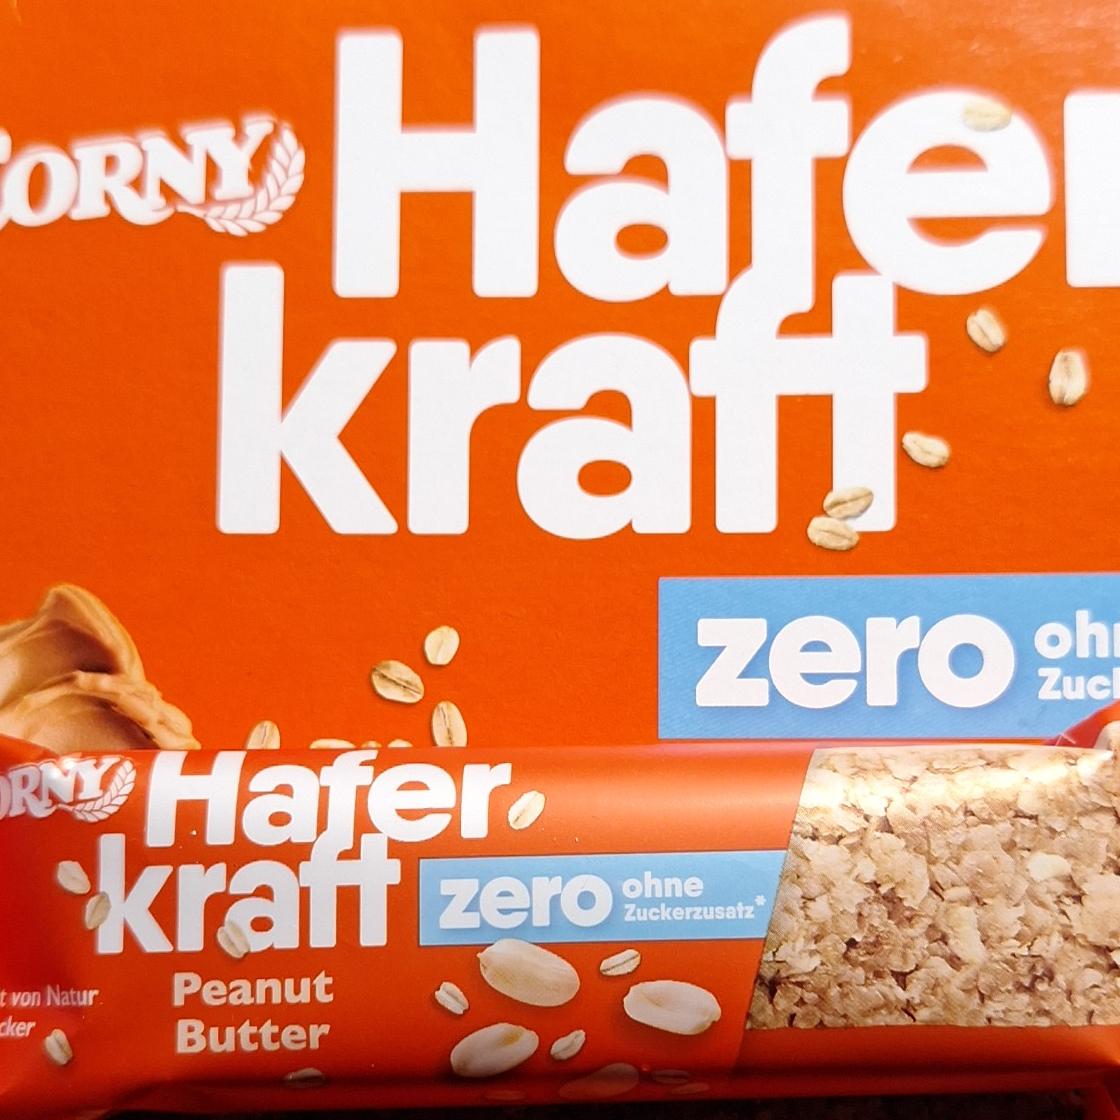 Fotografie - Hafer craft zero ohne zuckerzusatz peanut butter Corny